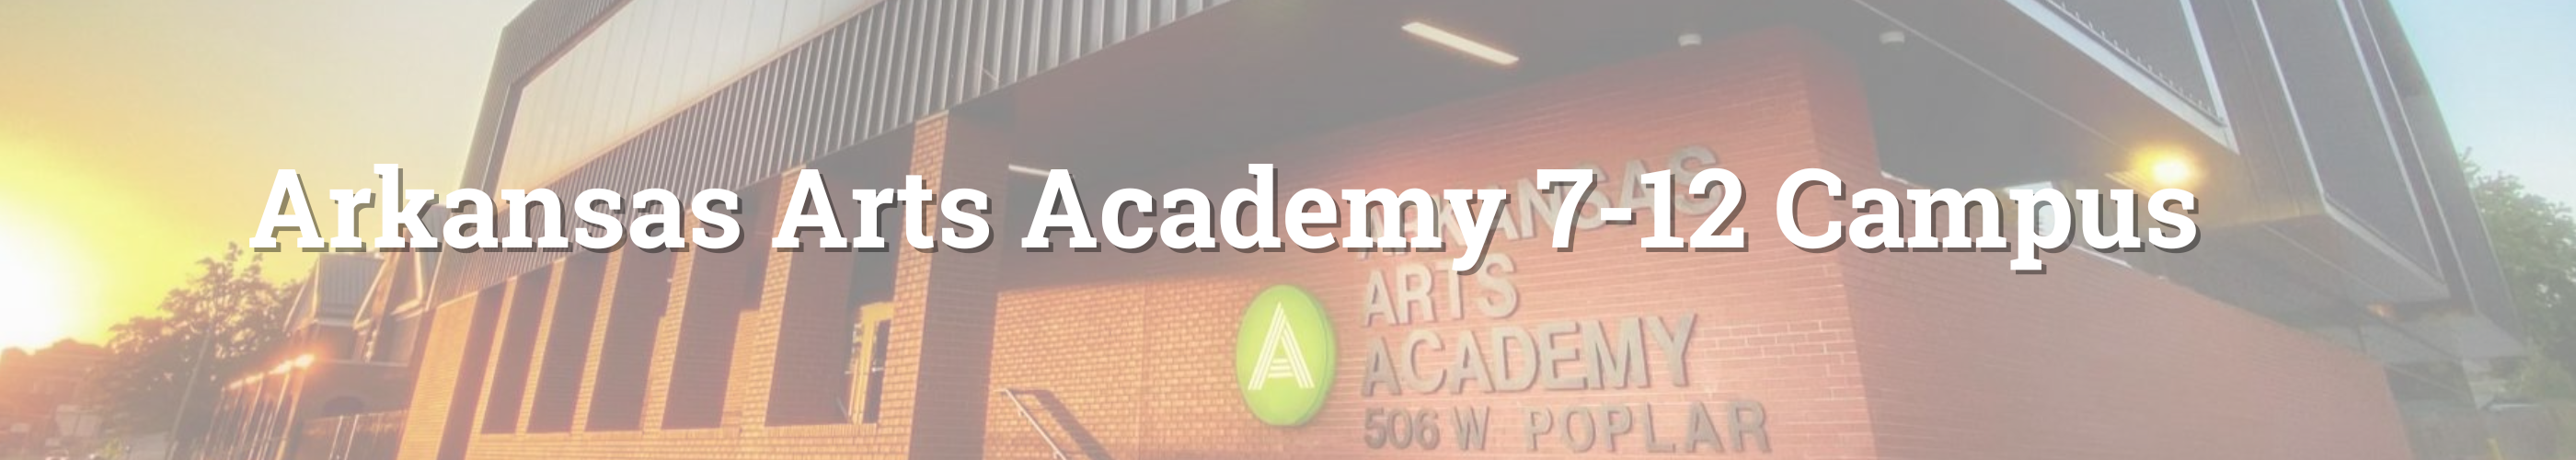 Arkansas Arts Academy 7-12 Campus